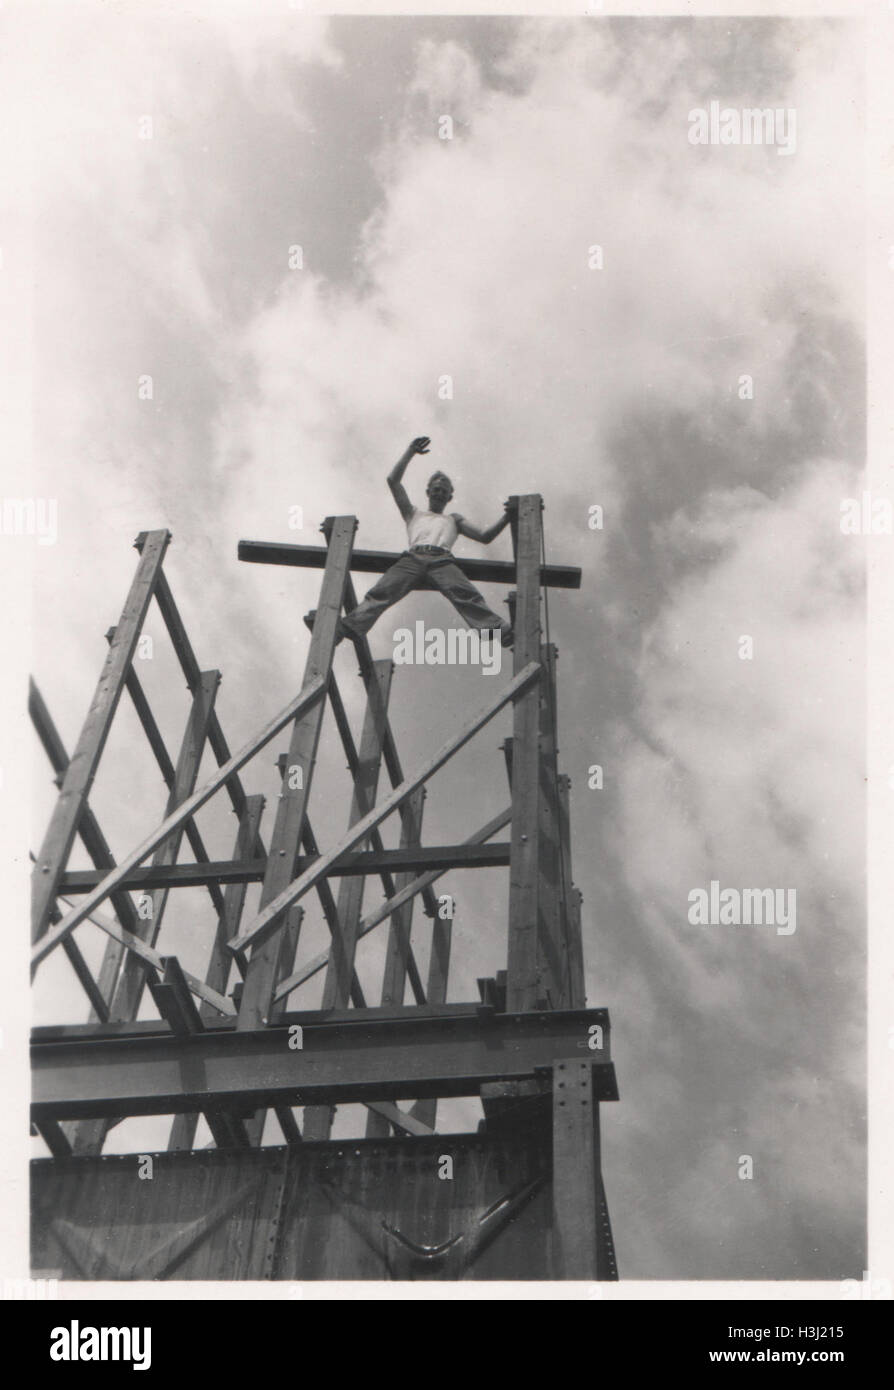 Lavoratore di costruzione in posizione precaria e che agita sulla cima di travi in un cantiere. Foto scattata nel 10 base Ordnance Depot Royal Army Ordnance Corps (RAOC) nella zona di Geneifa Ismailia vicino al canale di Suez 1952. Foto Stock